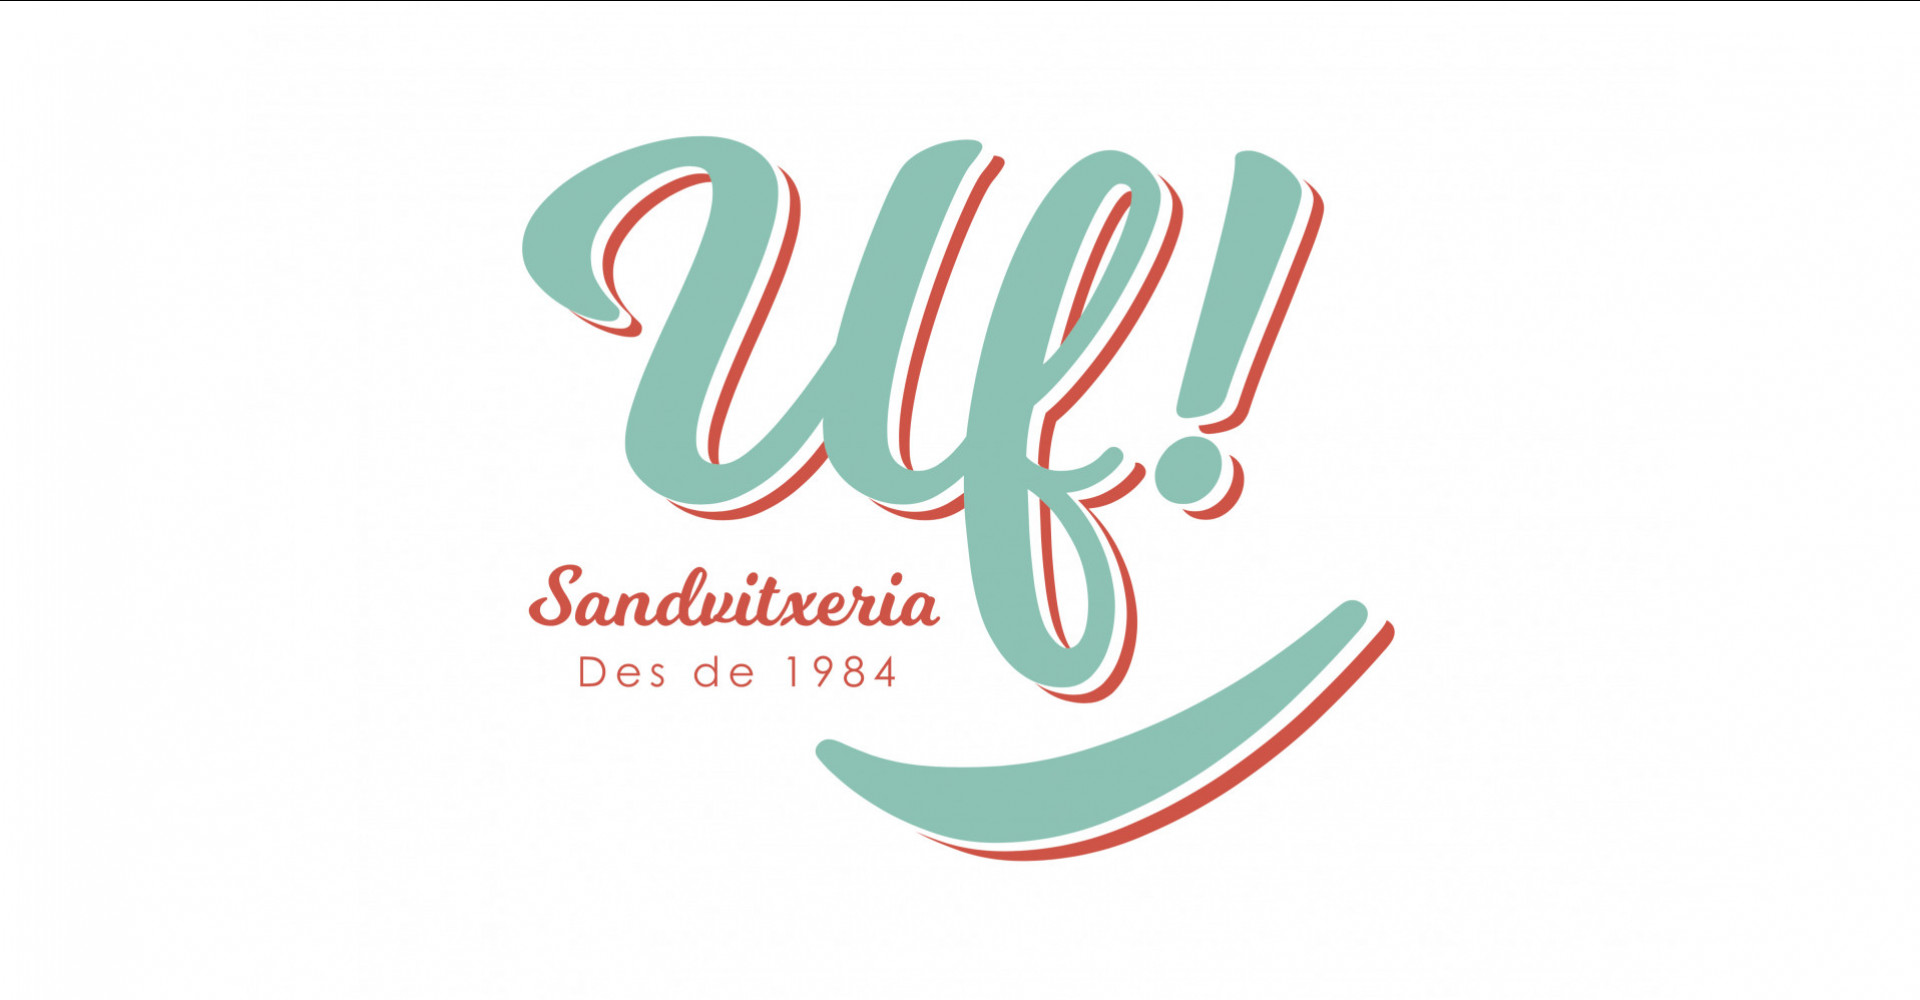 Sandvitxeria Uf!